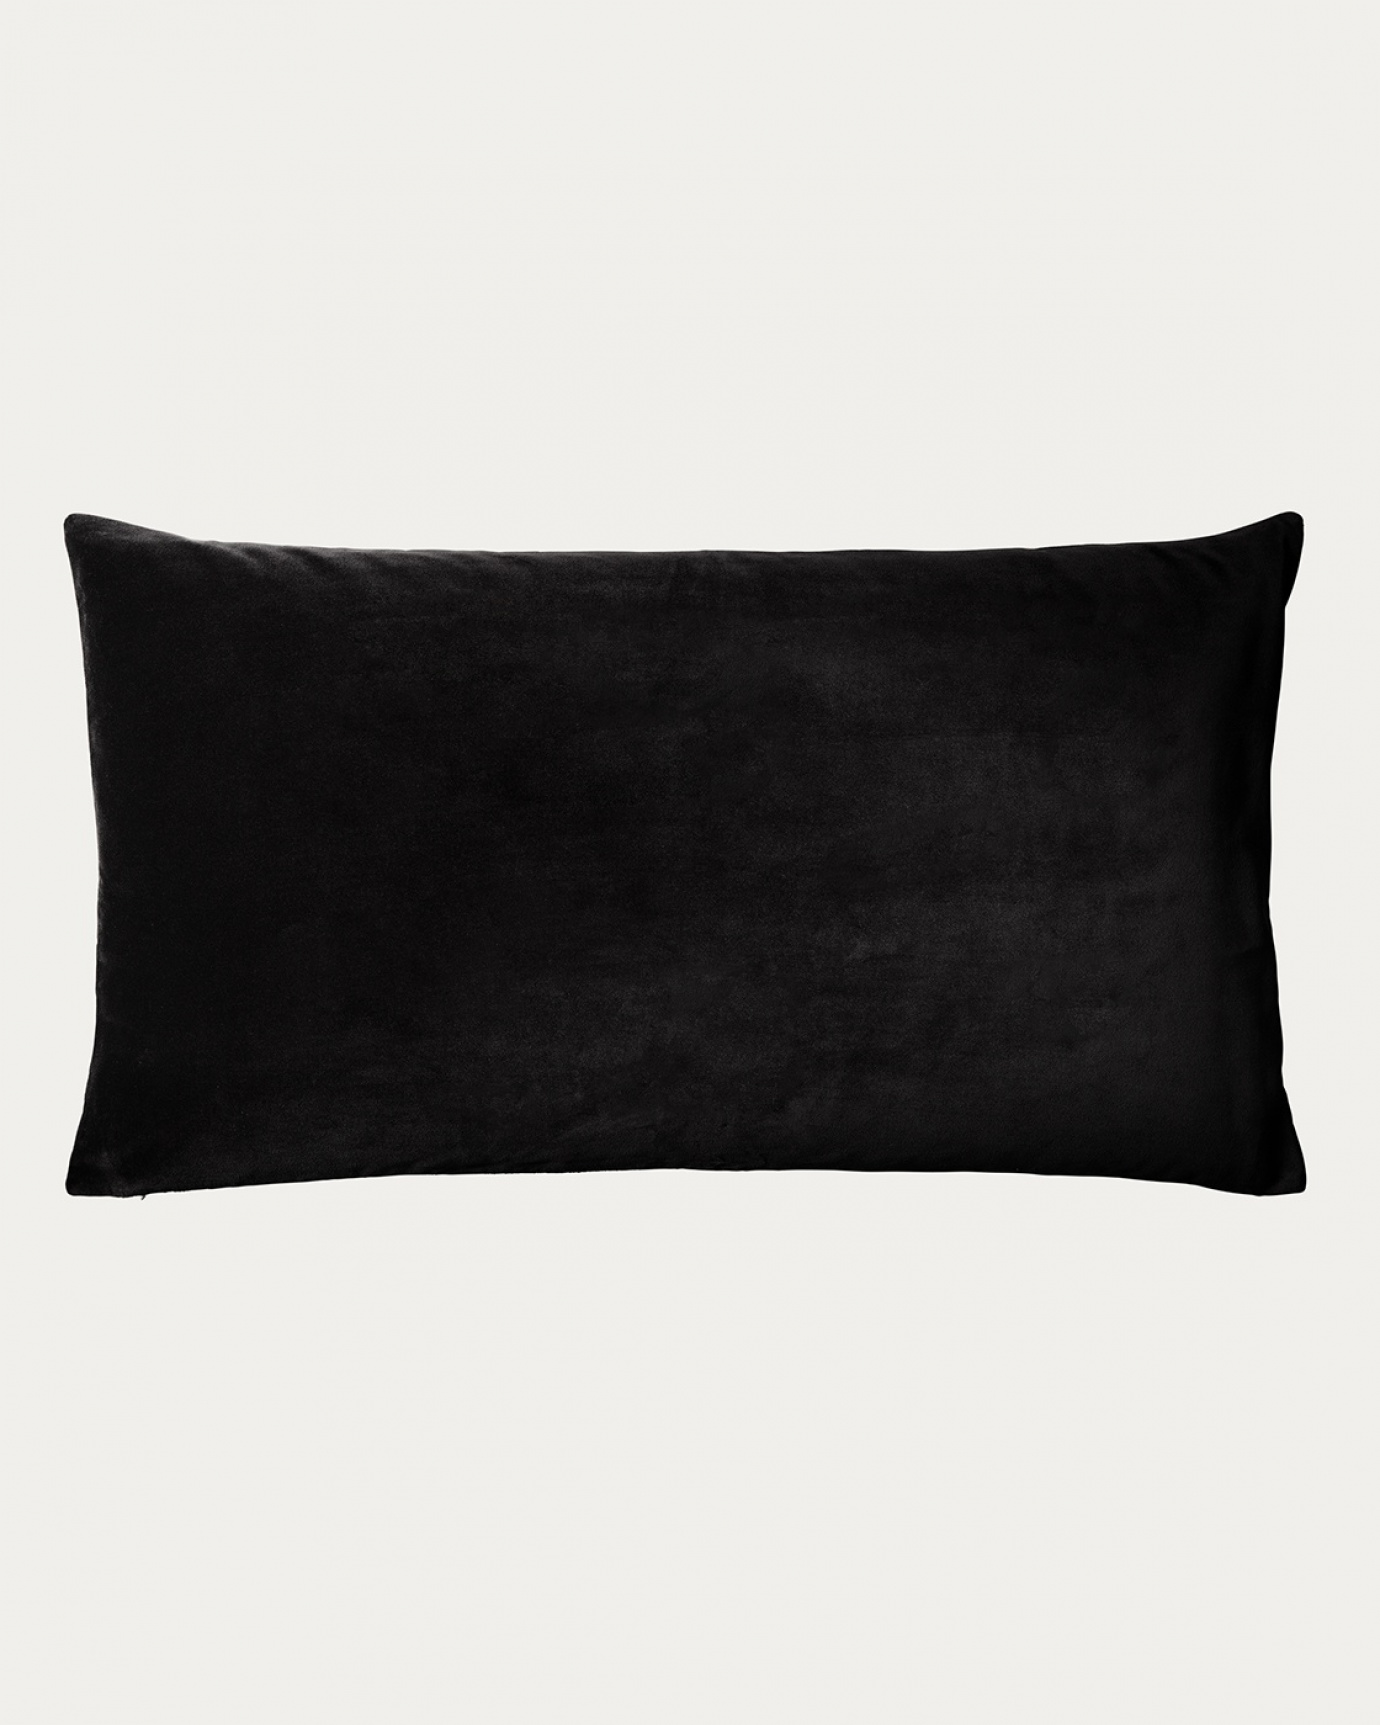 Produktbild svart PAOLO kuddfodral av mjuk ekologisk bomullssammet och 100% linne från LINUM DESIGN. Storlek 50x90 cm.